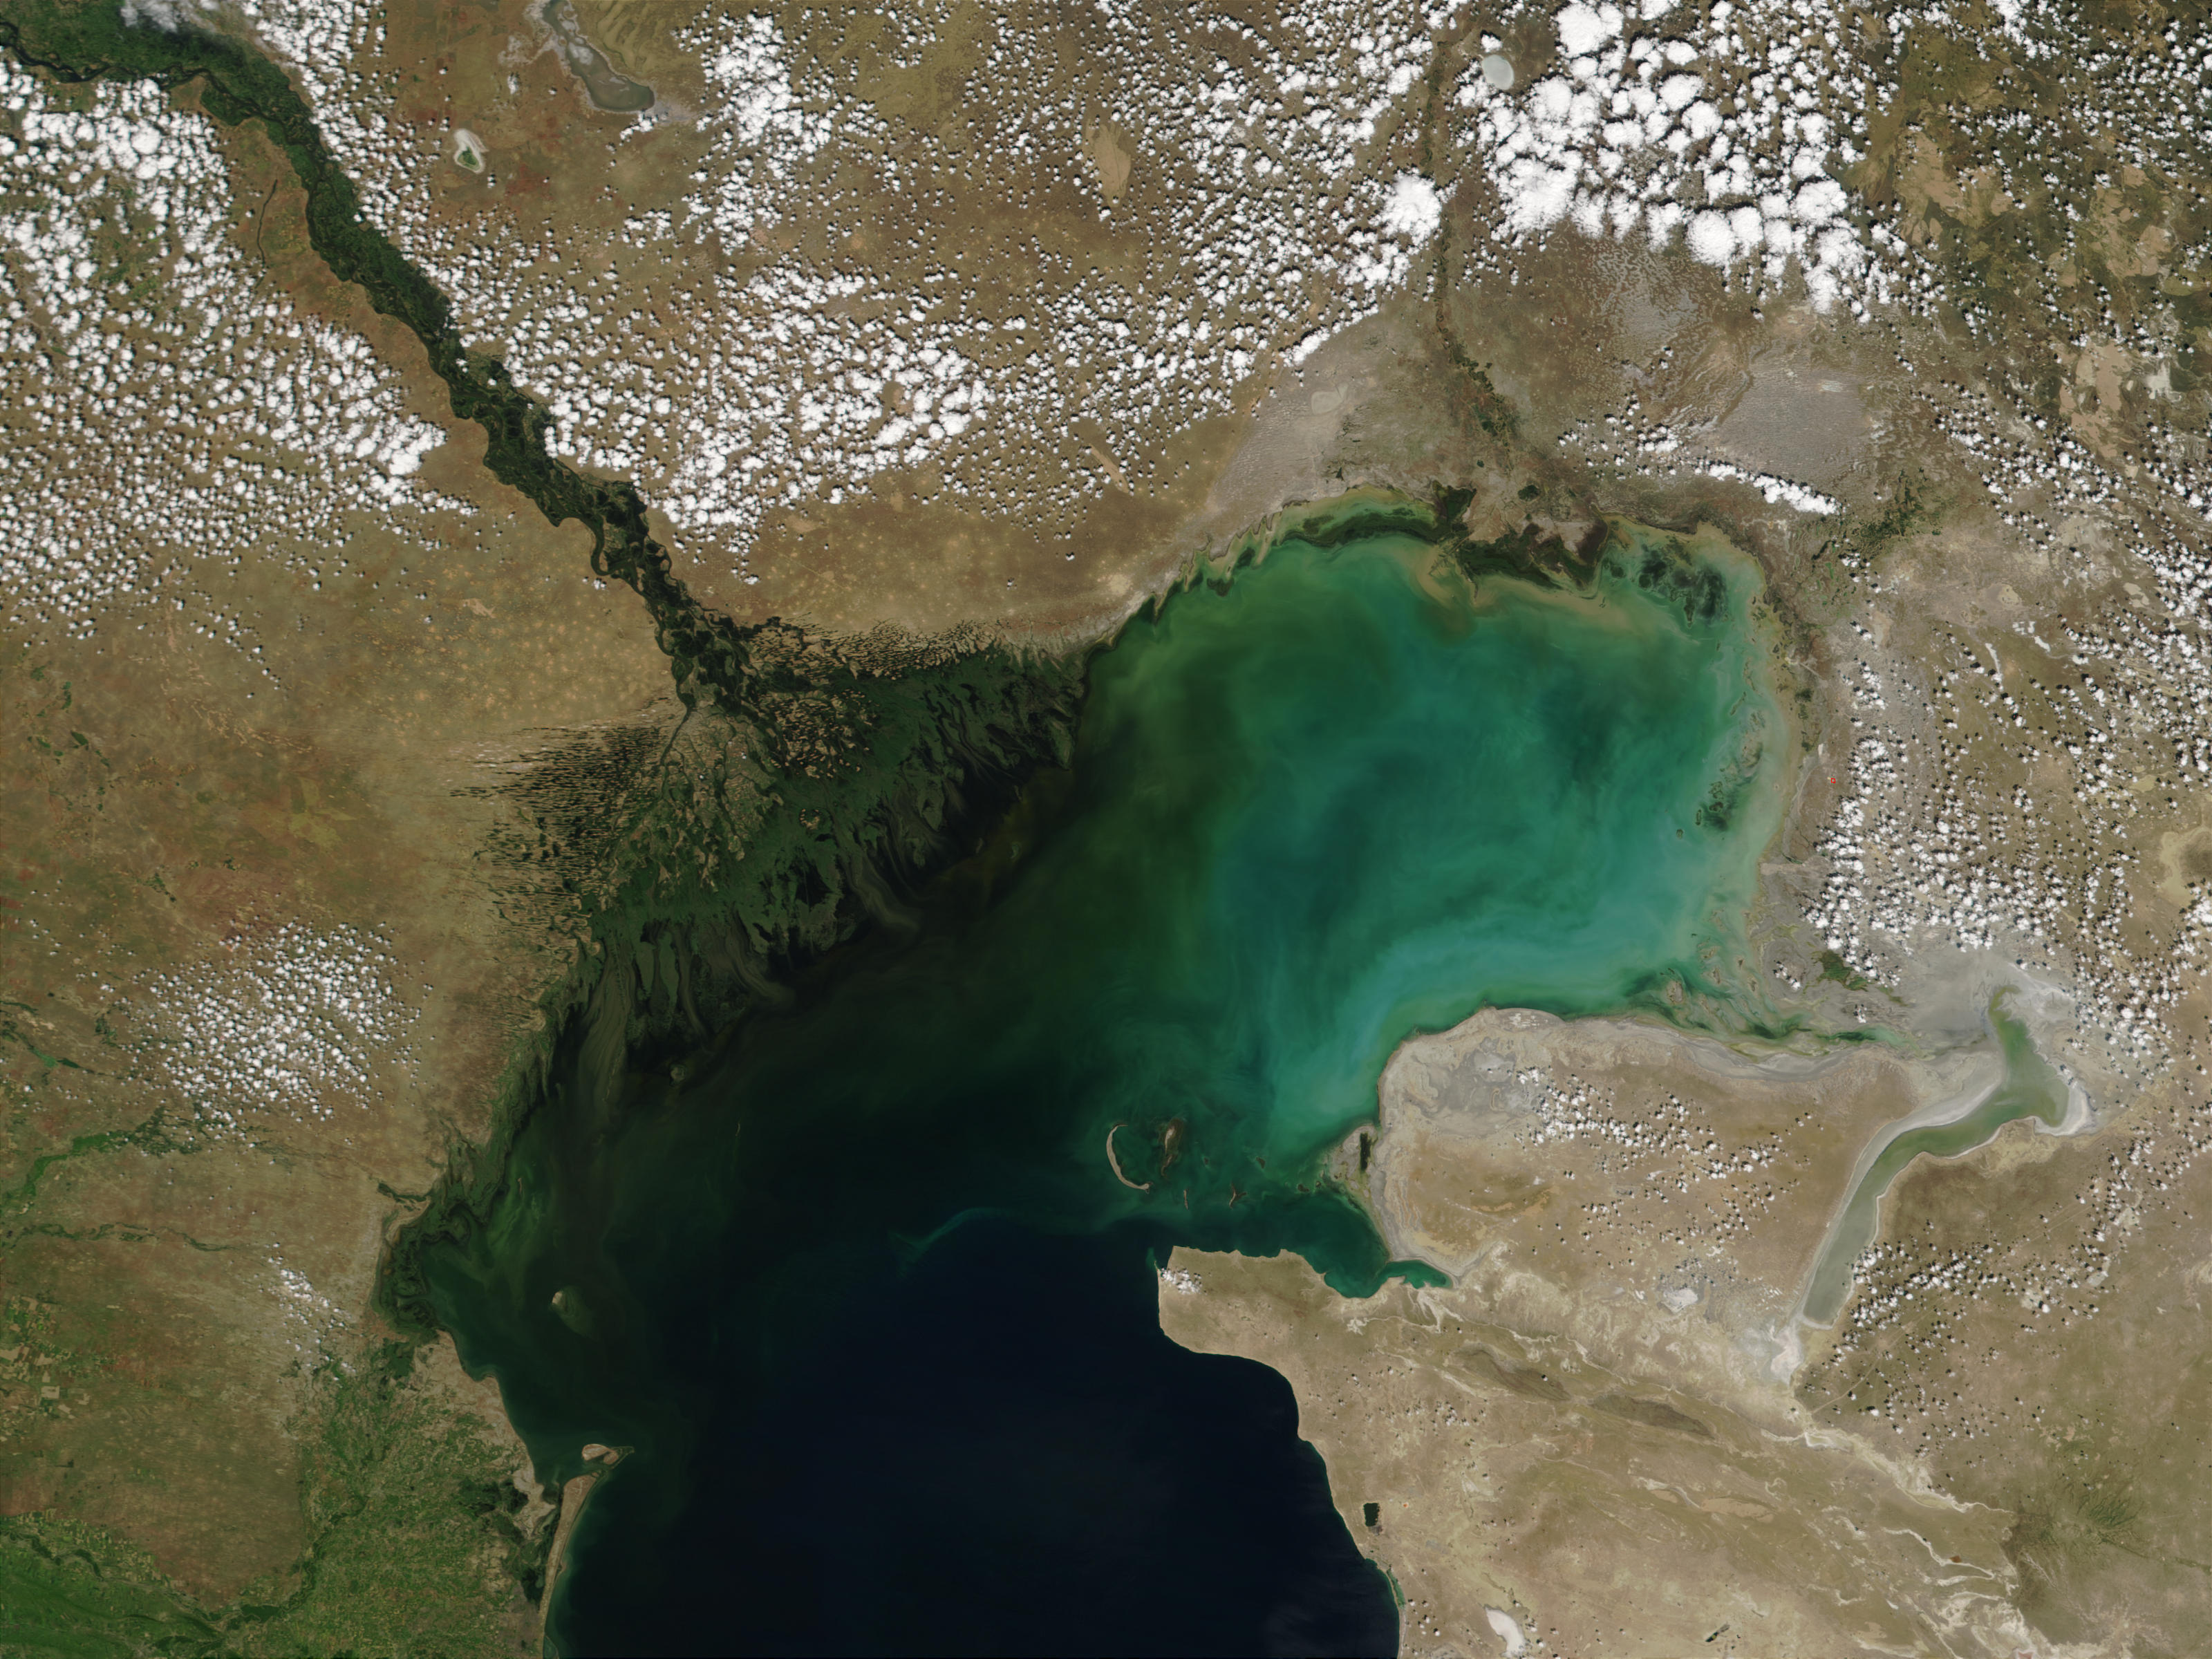 Волга впадает в Каспийское море